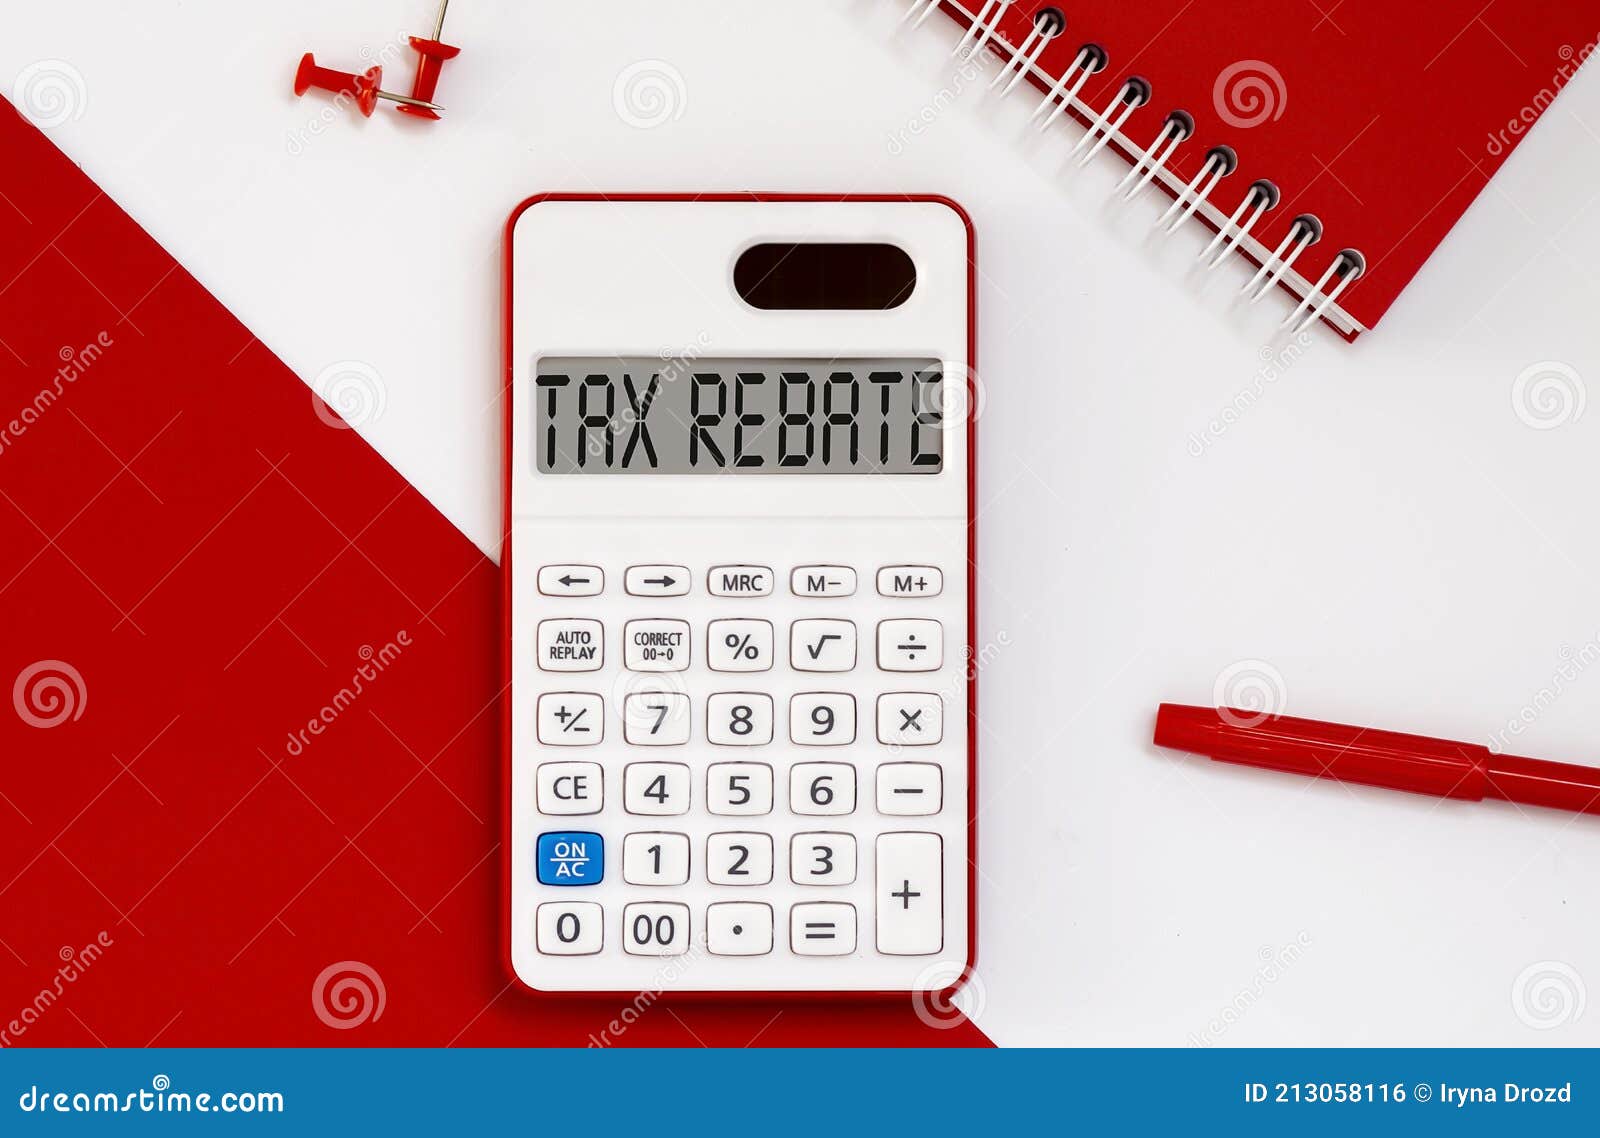 p55-tax-rebate-form-by-state-printable-rebate-form